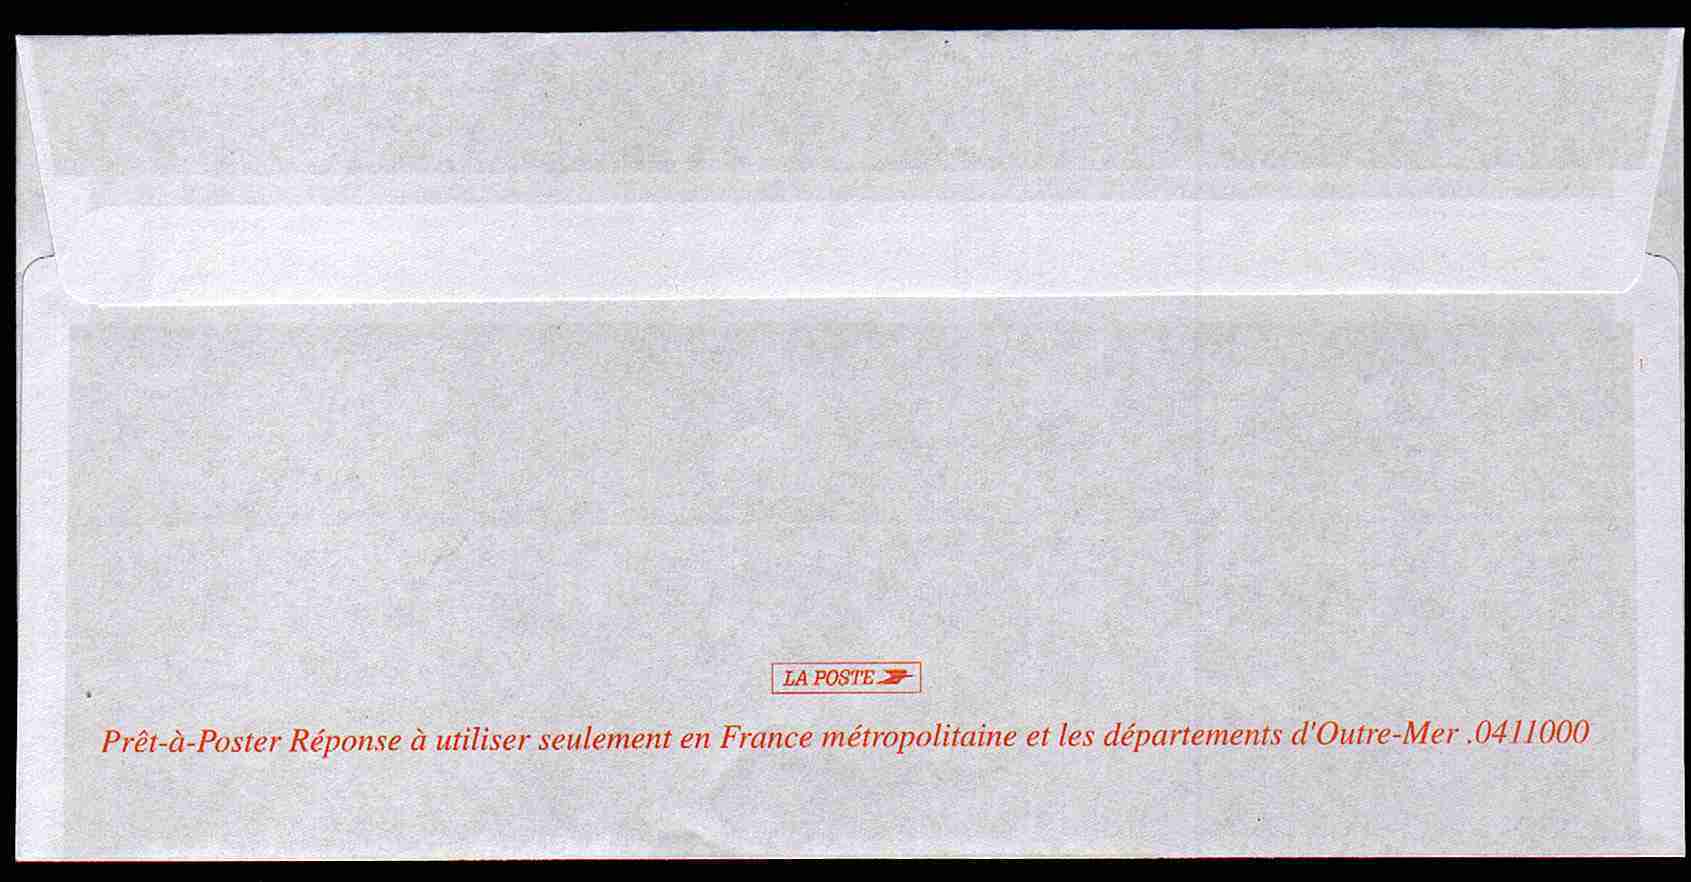 Entier Postal PAP Réponse Croix Rouge Française. Autorisation 81728, N° Au Dos: 0411000 - Prêts-à-poster: Réponse /Lamouche